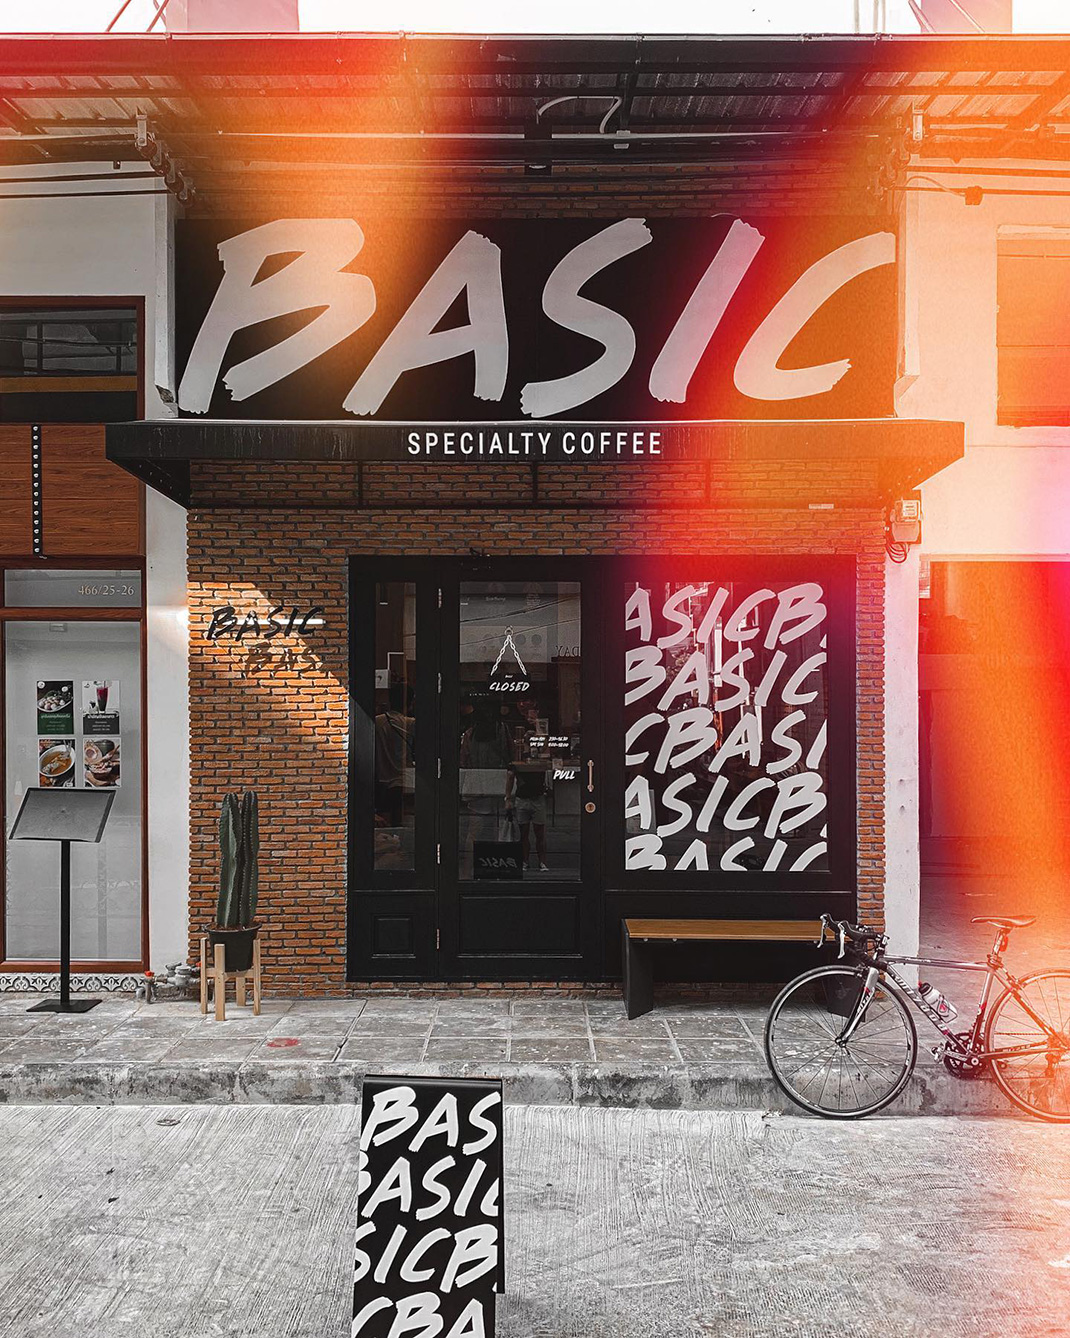 曼谷咖啡店Basic Specialty Coffee 泰国 曼谷 咖啡店 cafe 打卡店 网红店 logo设计 vi设计 空间设计 视觉餐饮